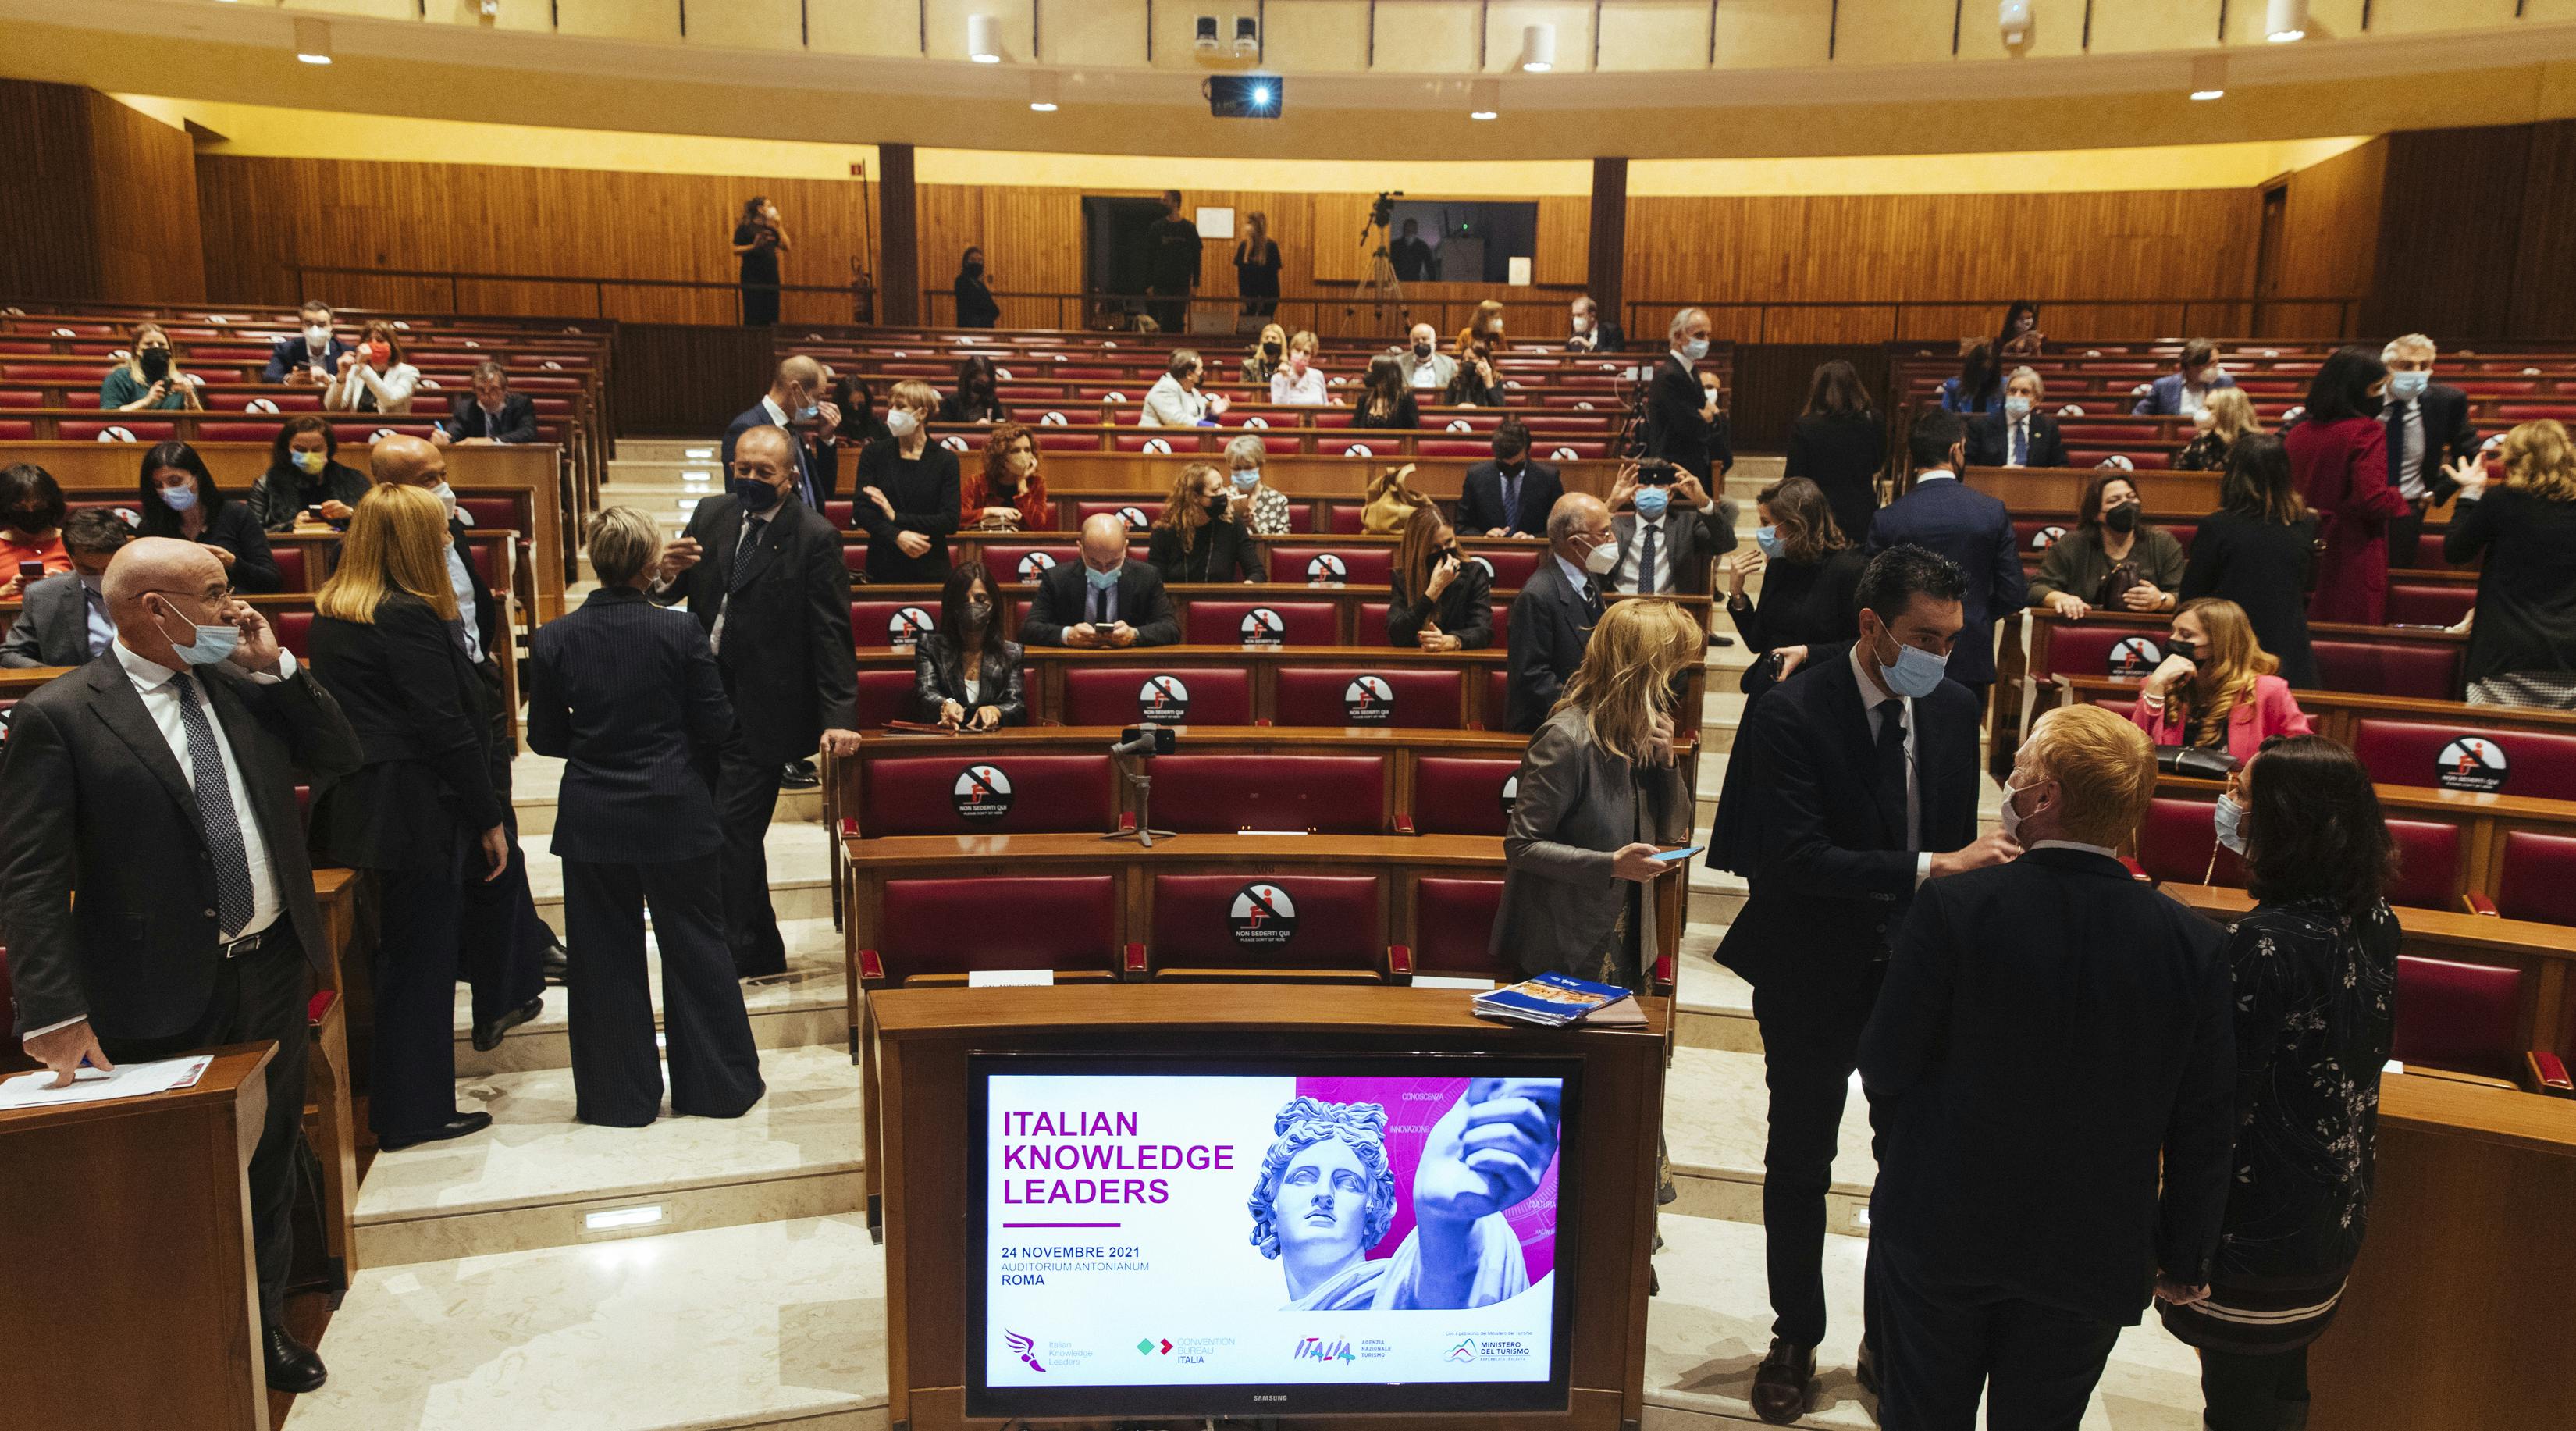 partecipanti dell'evento italian knowledge leaders aspettano inizio lavori